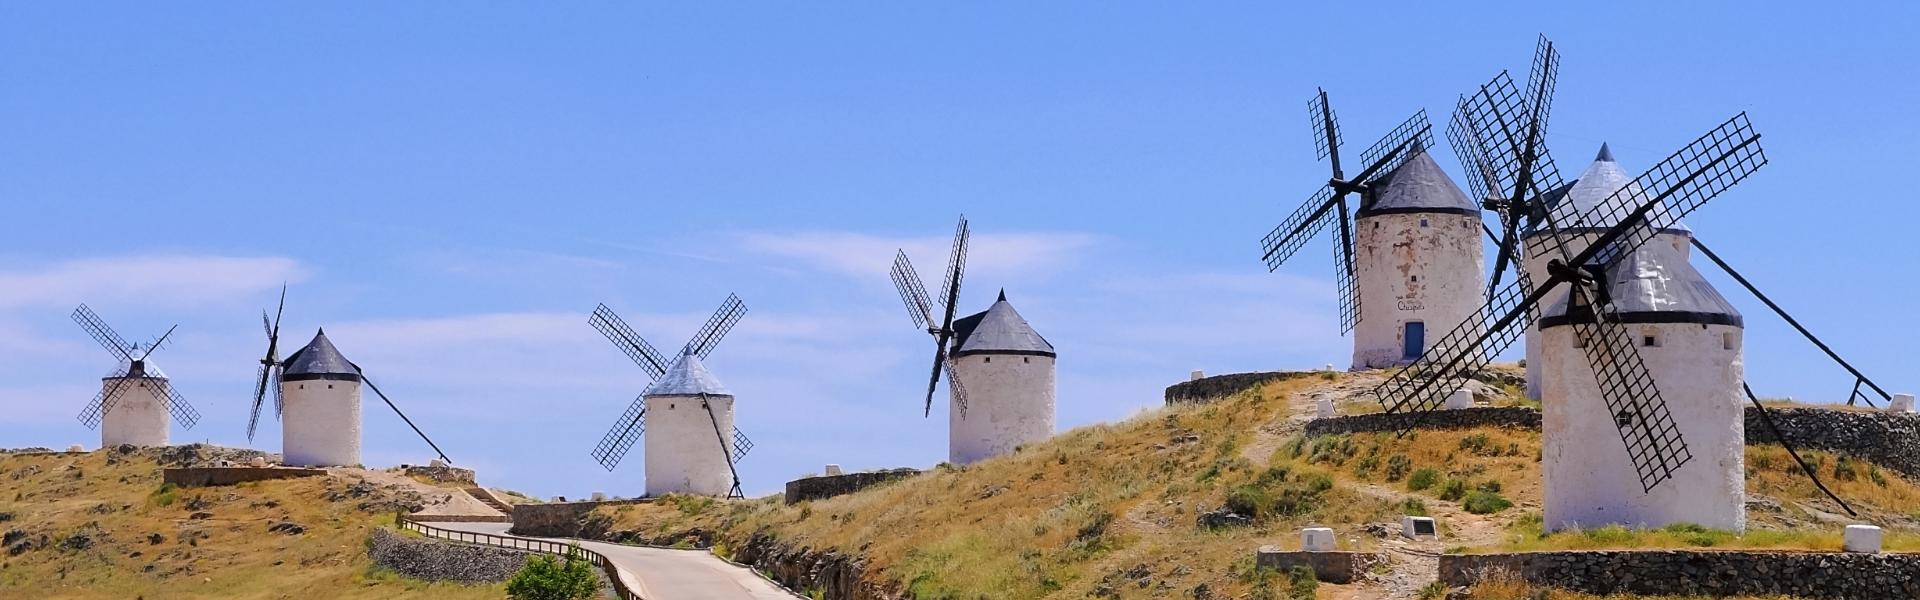 Alquileres y casas de vacaciones en Castilla-La Mancha - Wimdu